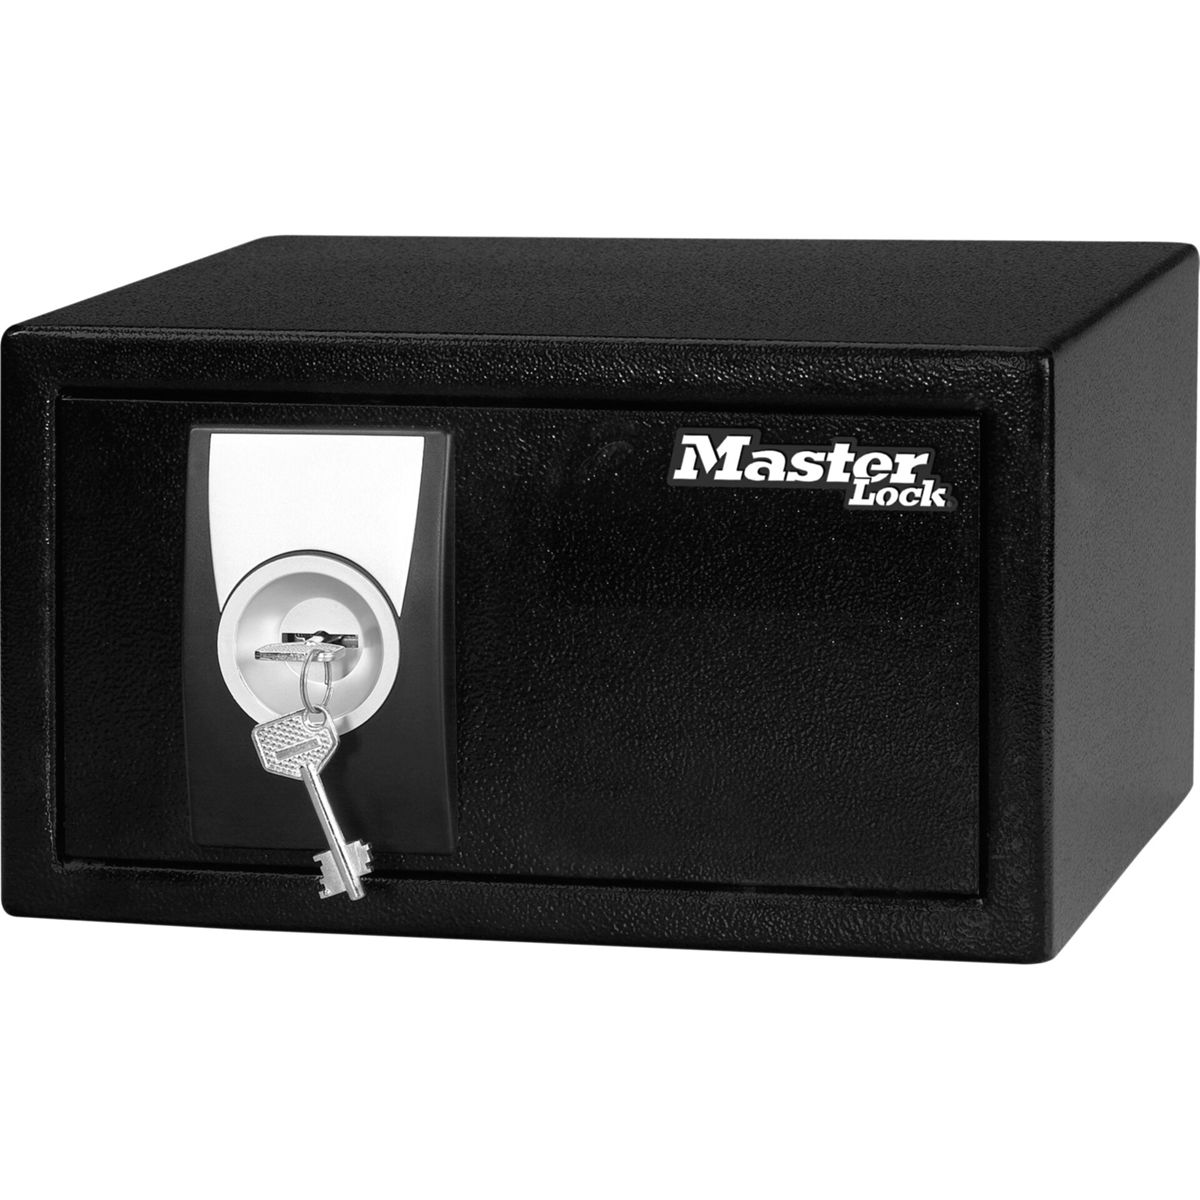 MASTERLOCK Master Lock Kleiner Safe X031ML mit Grey Black Safe and Schlüssel